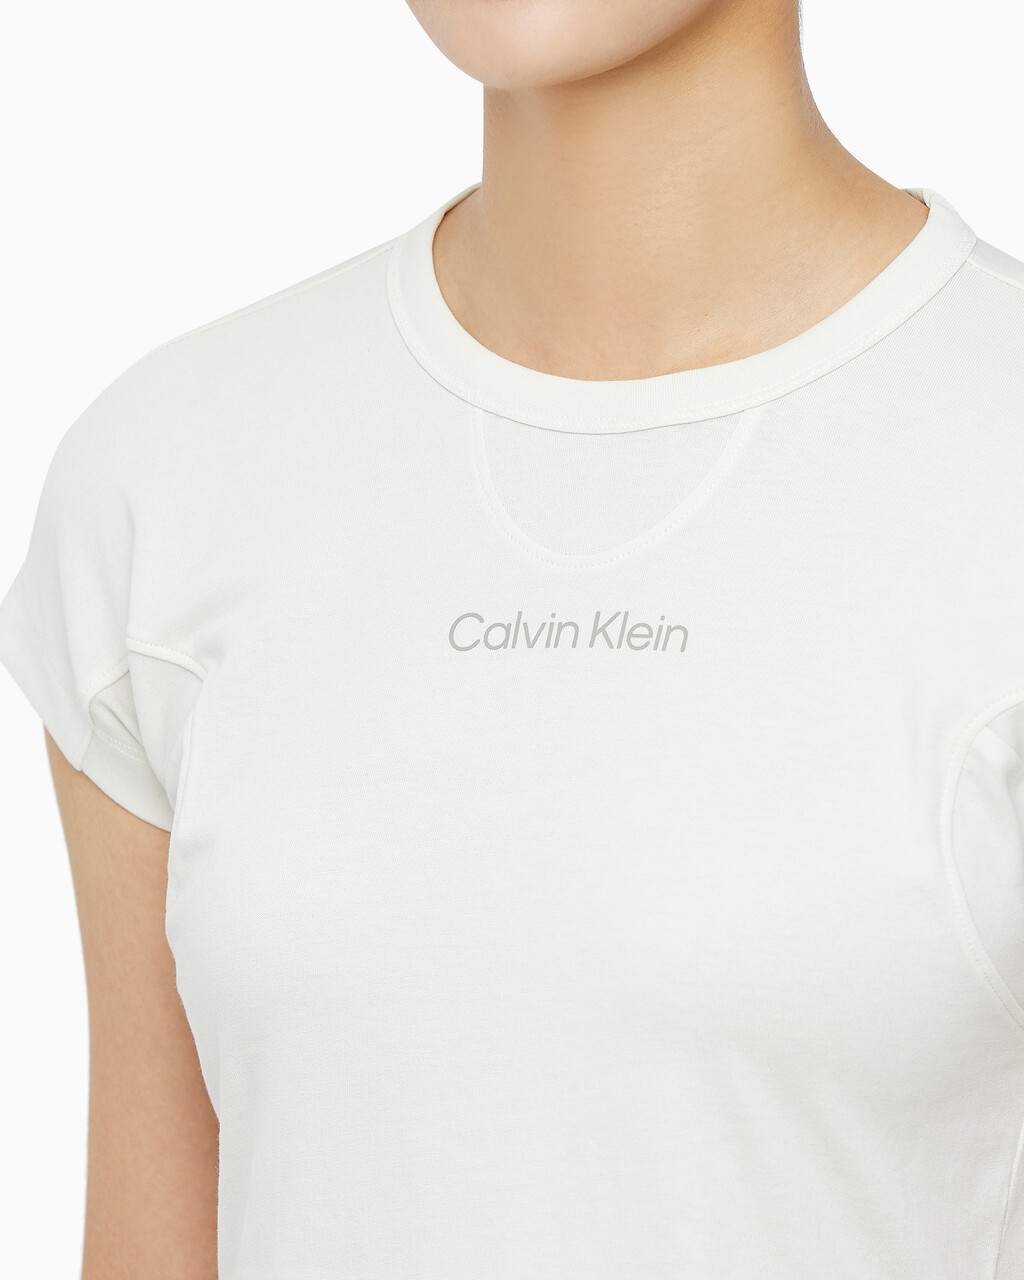 Buy 여성 슬림핏 숏 슬리브 티셔츠 in color WHITE